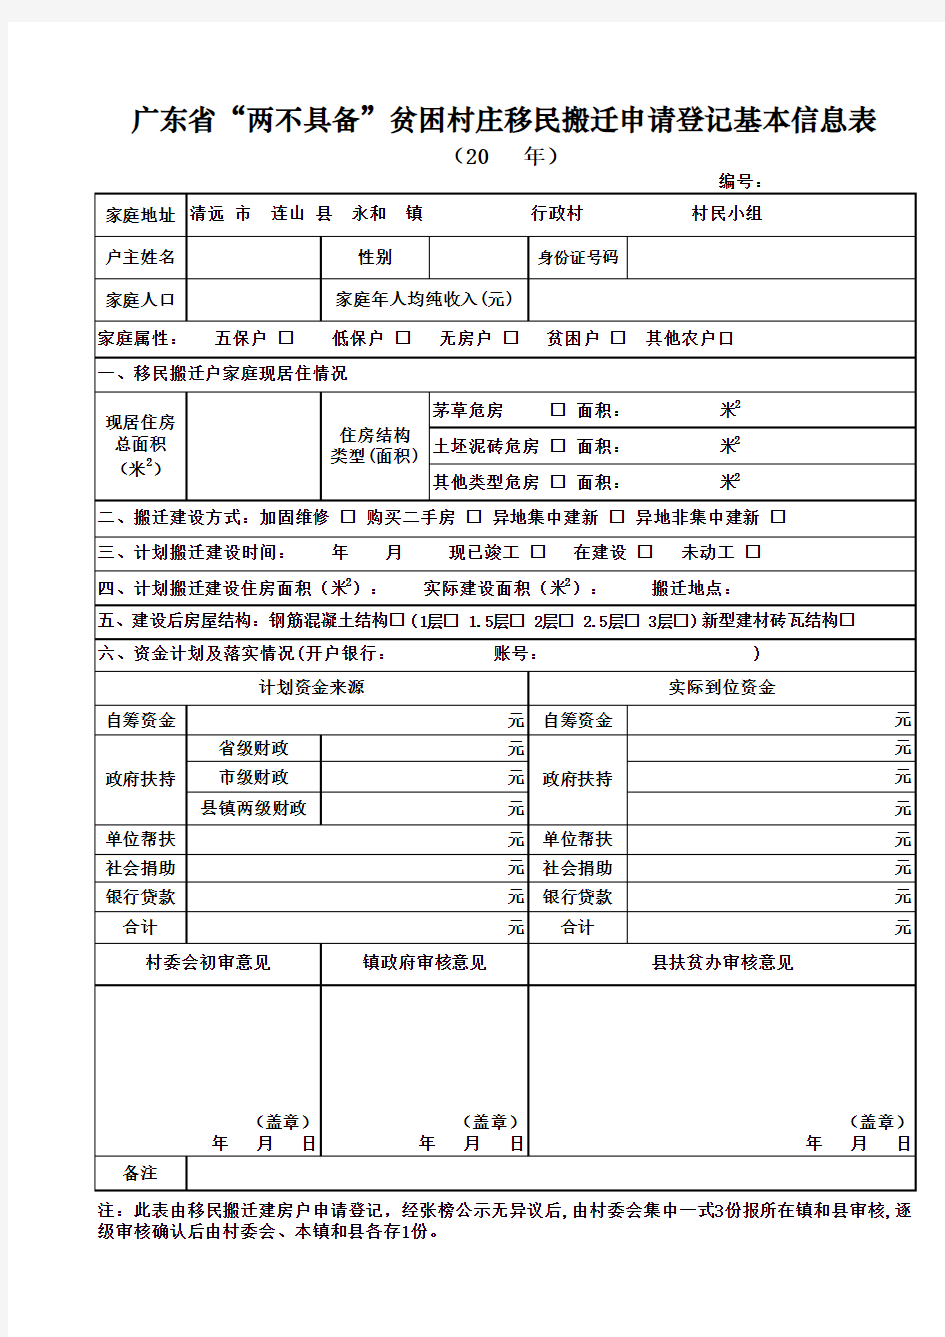 广东省“两不具备”贫困村庄移民搬迁申请登记基本信息表